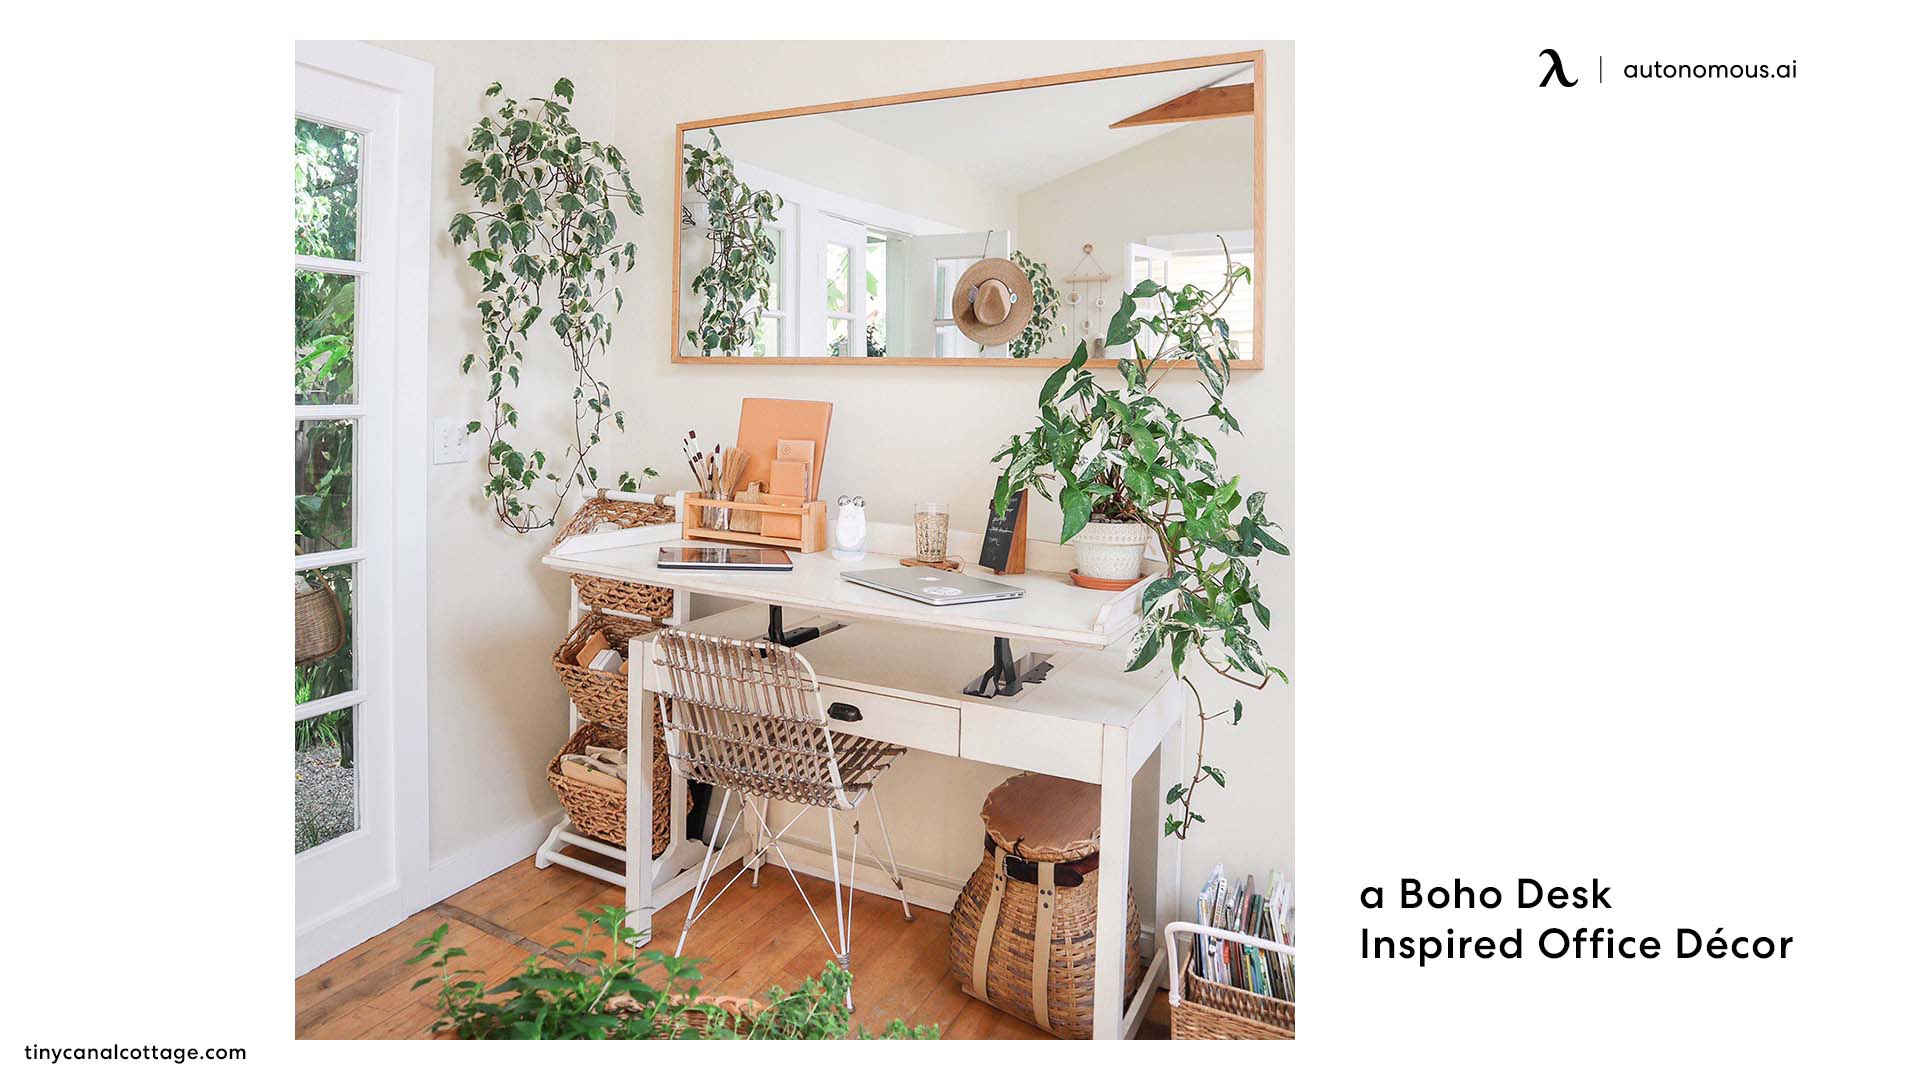 Create a Boho Desk Inspired Office Décor